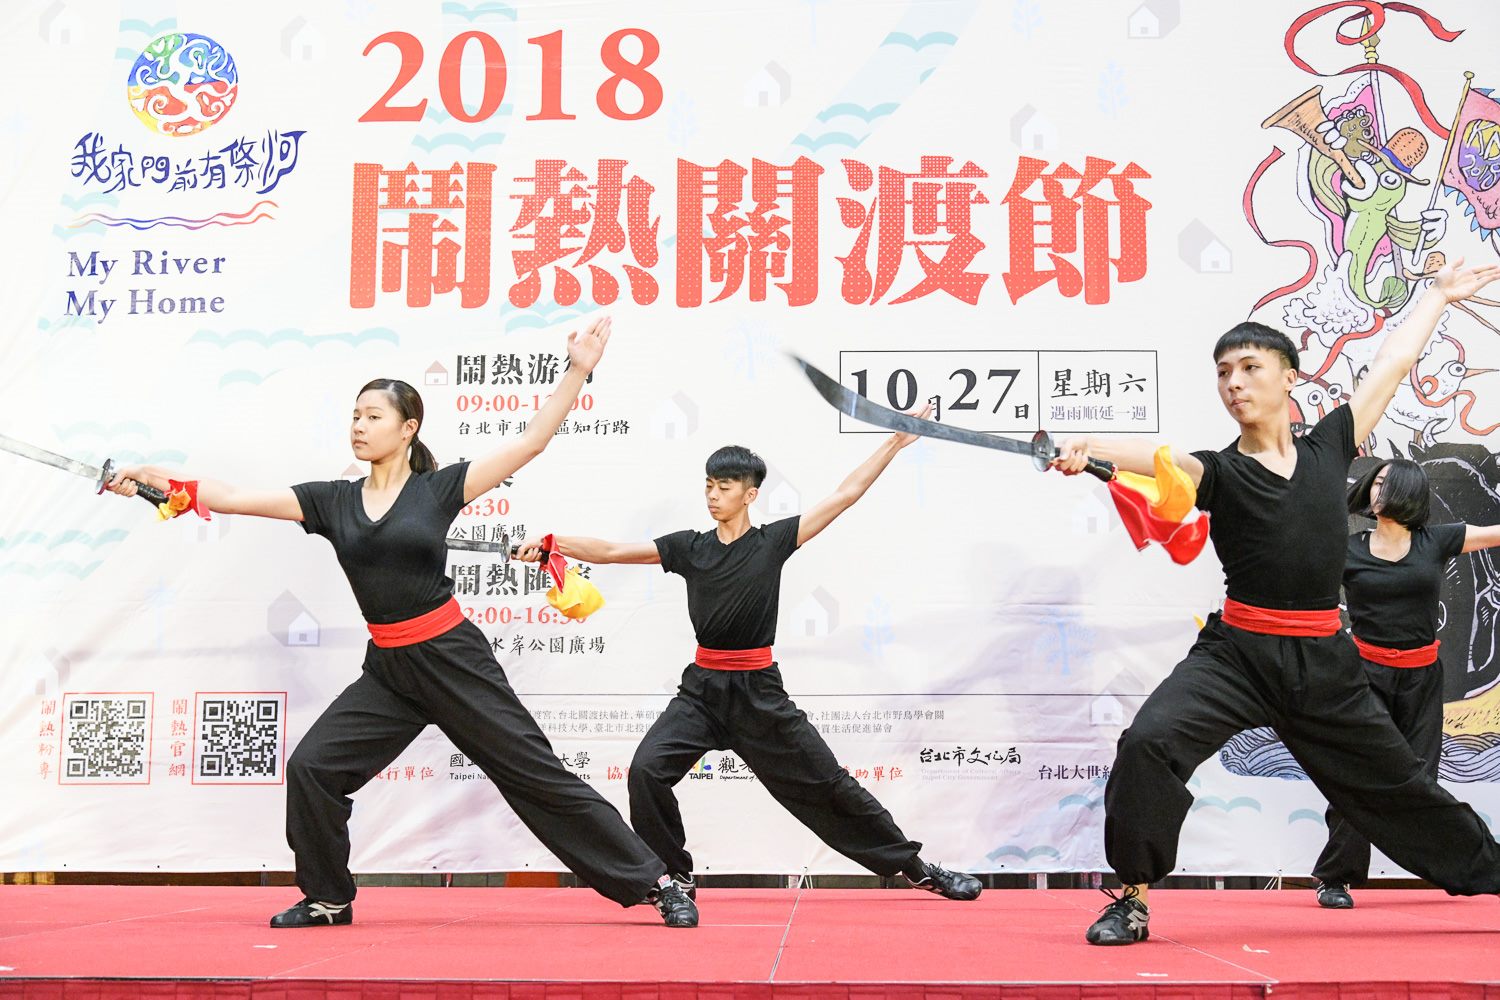 臺北藝術大學舞蹈系學生結合傳統武術與舞蹈的開場表演